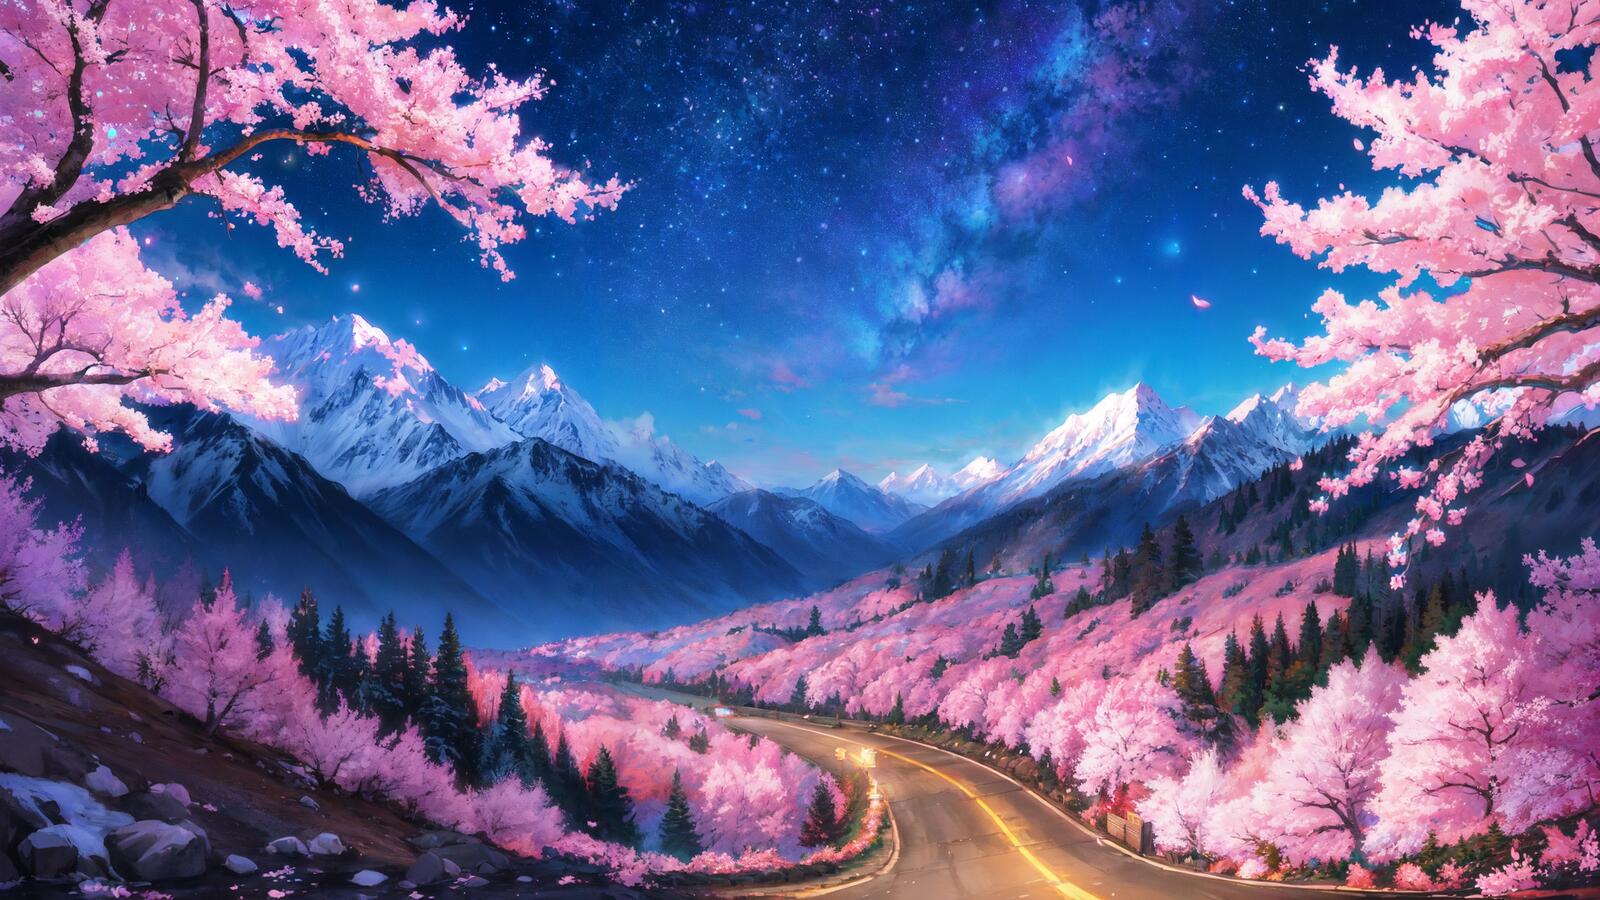 Бесплатное фото Фэнтезийный пейзаж с горами и розовыми деревьями